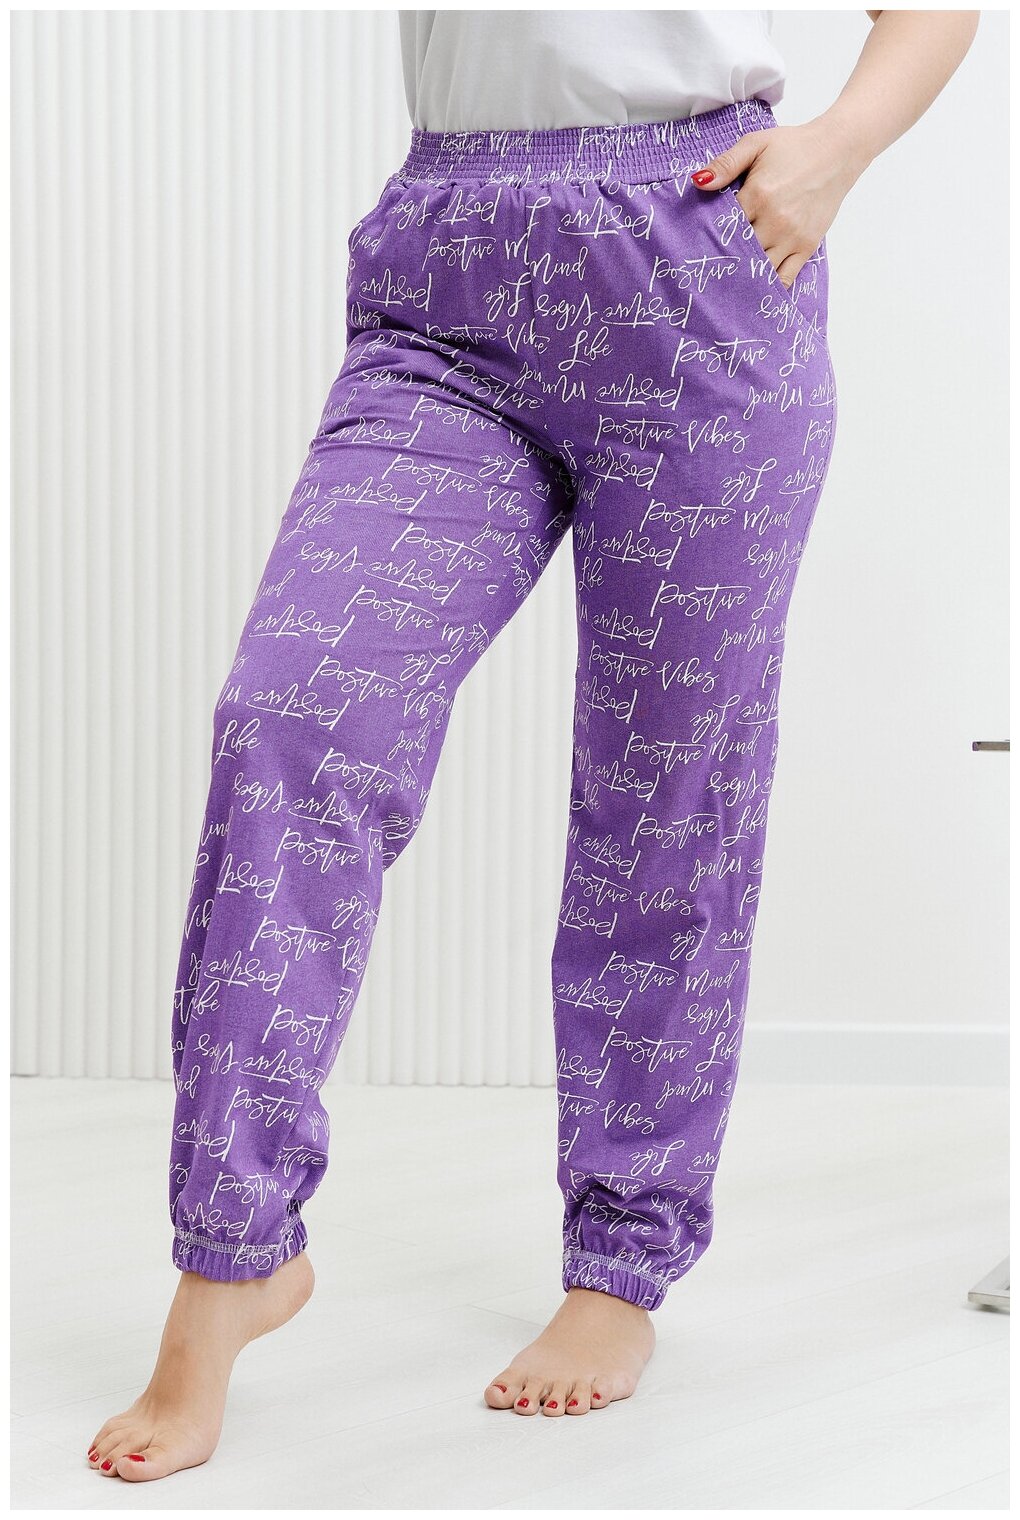 Брюки Натали, без рукава, пояс на резинке, карманы, размер 54, фиолетовый - фотография № 16